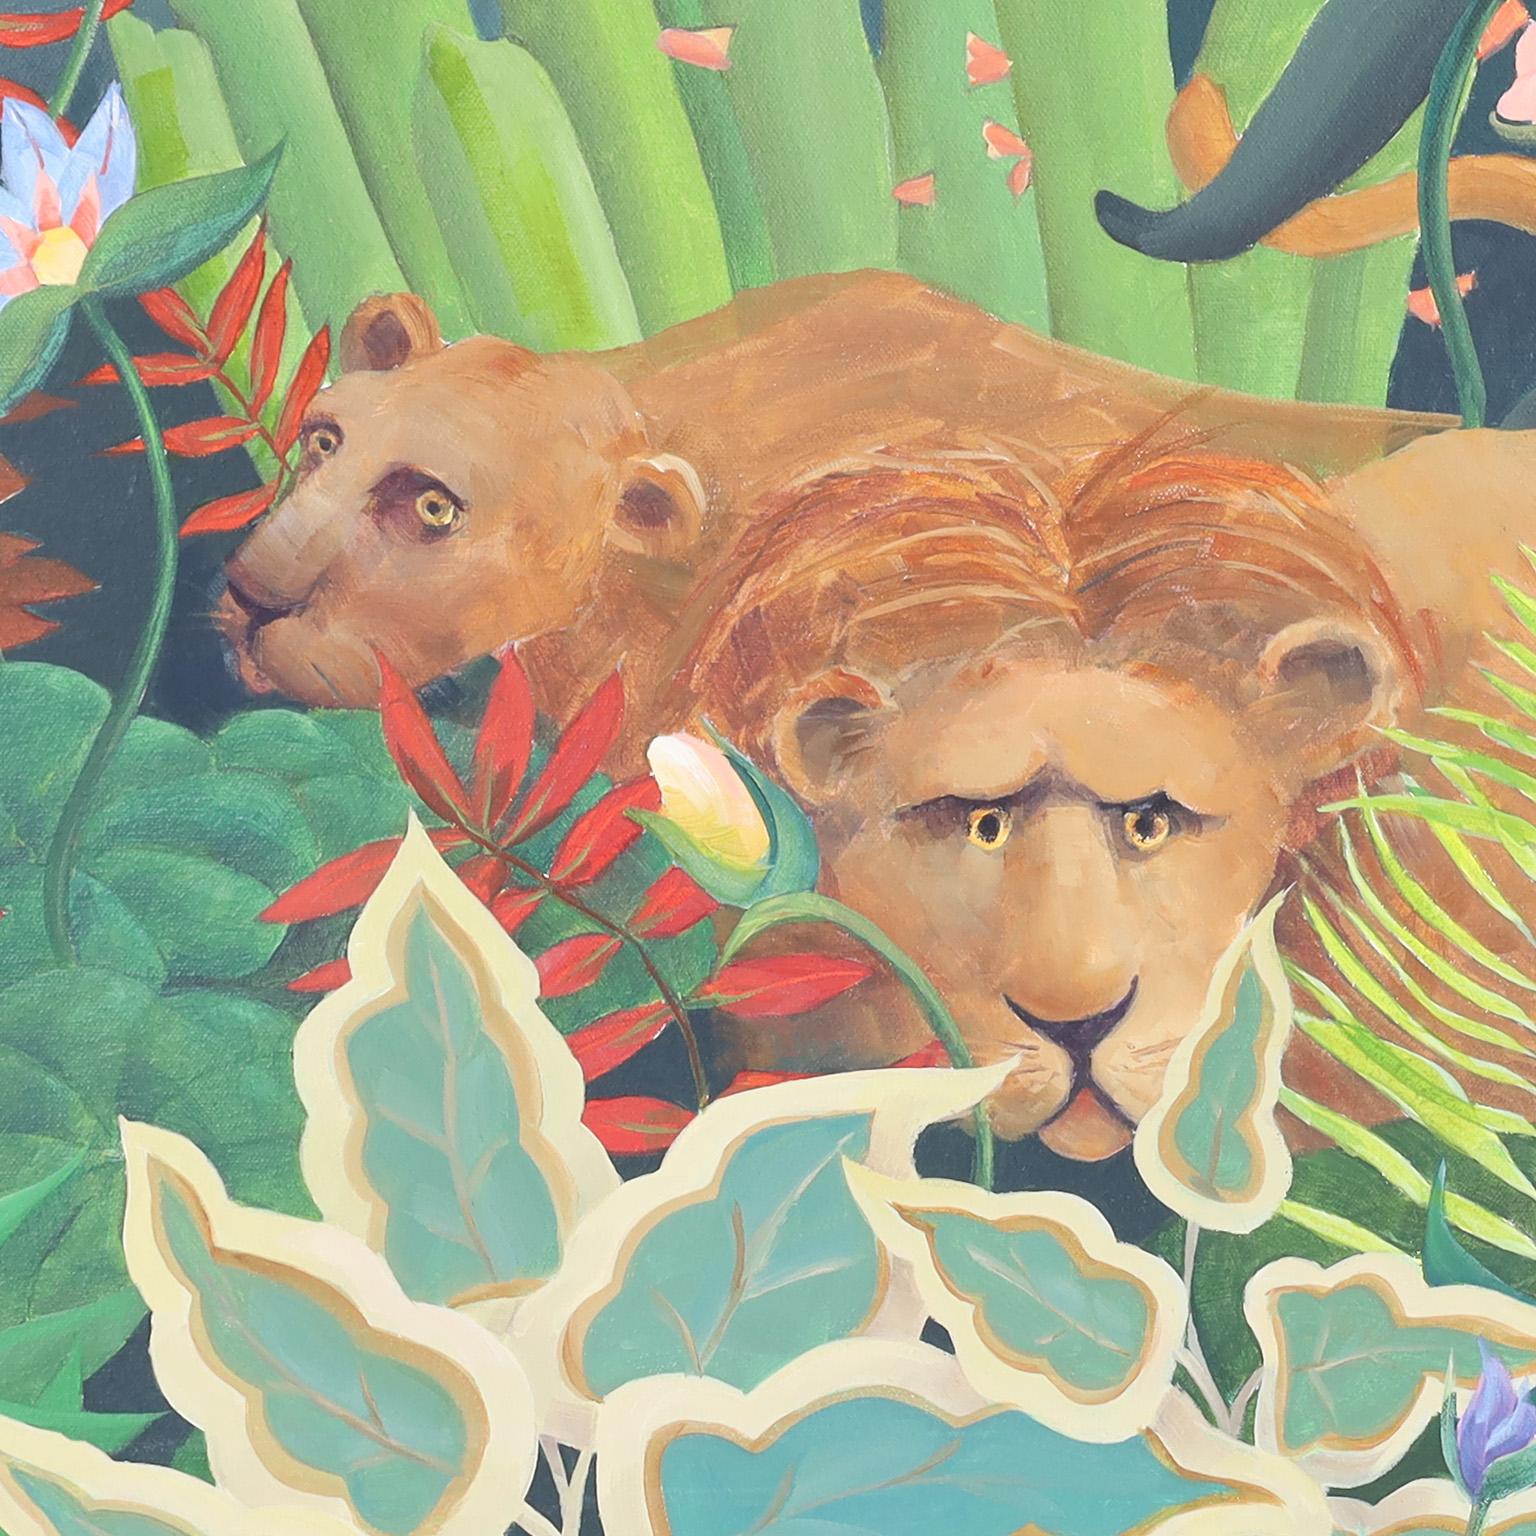 Peinture acrylique fantaisiste sur toile qui reprend le style naïf et coloré du peintre français Henri ROUSSEAU en y ajoutant une femme se prélassant sur un canapé au milieu d'une jungle. Signé M-One A&M 1990.